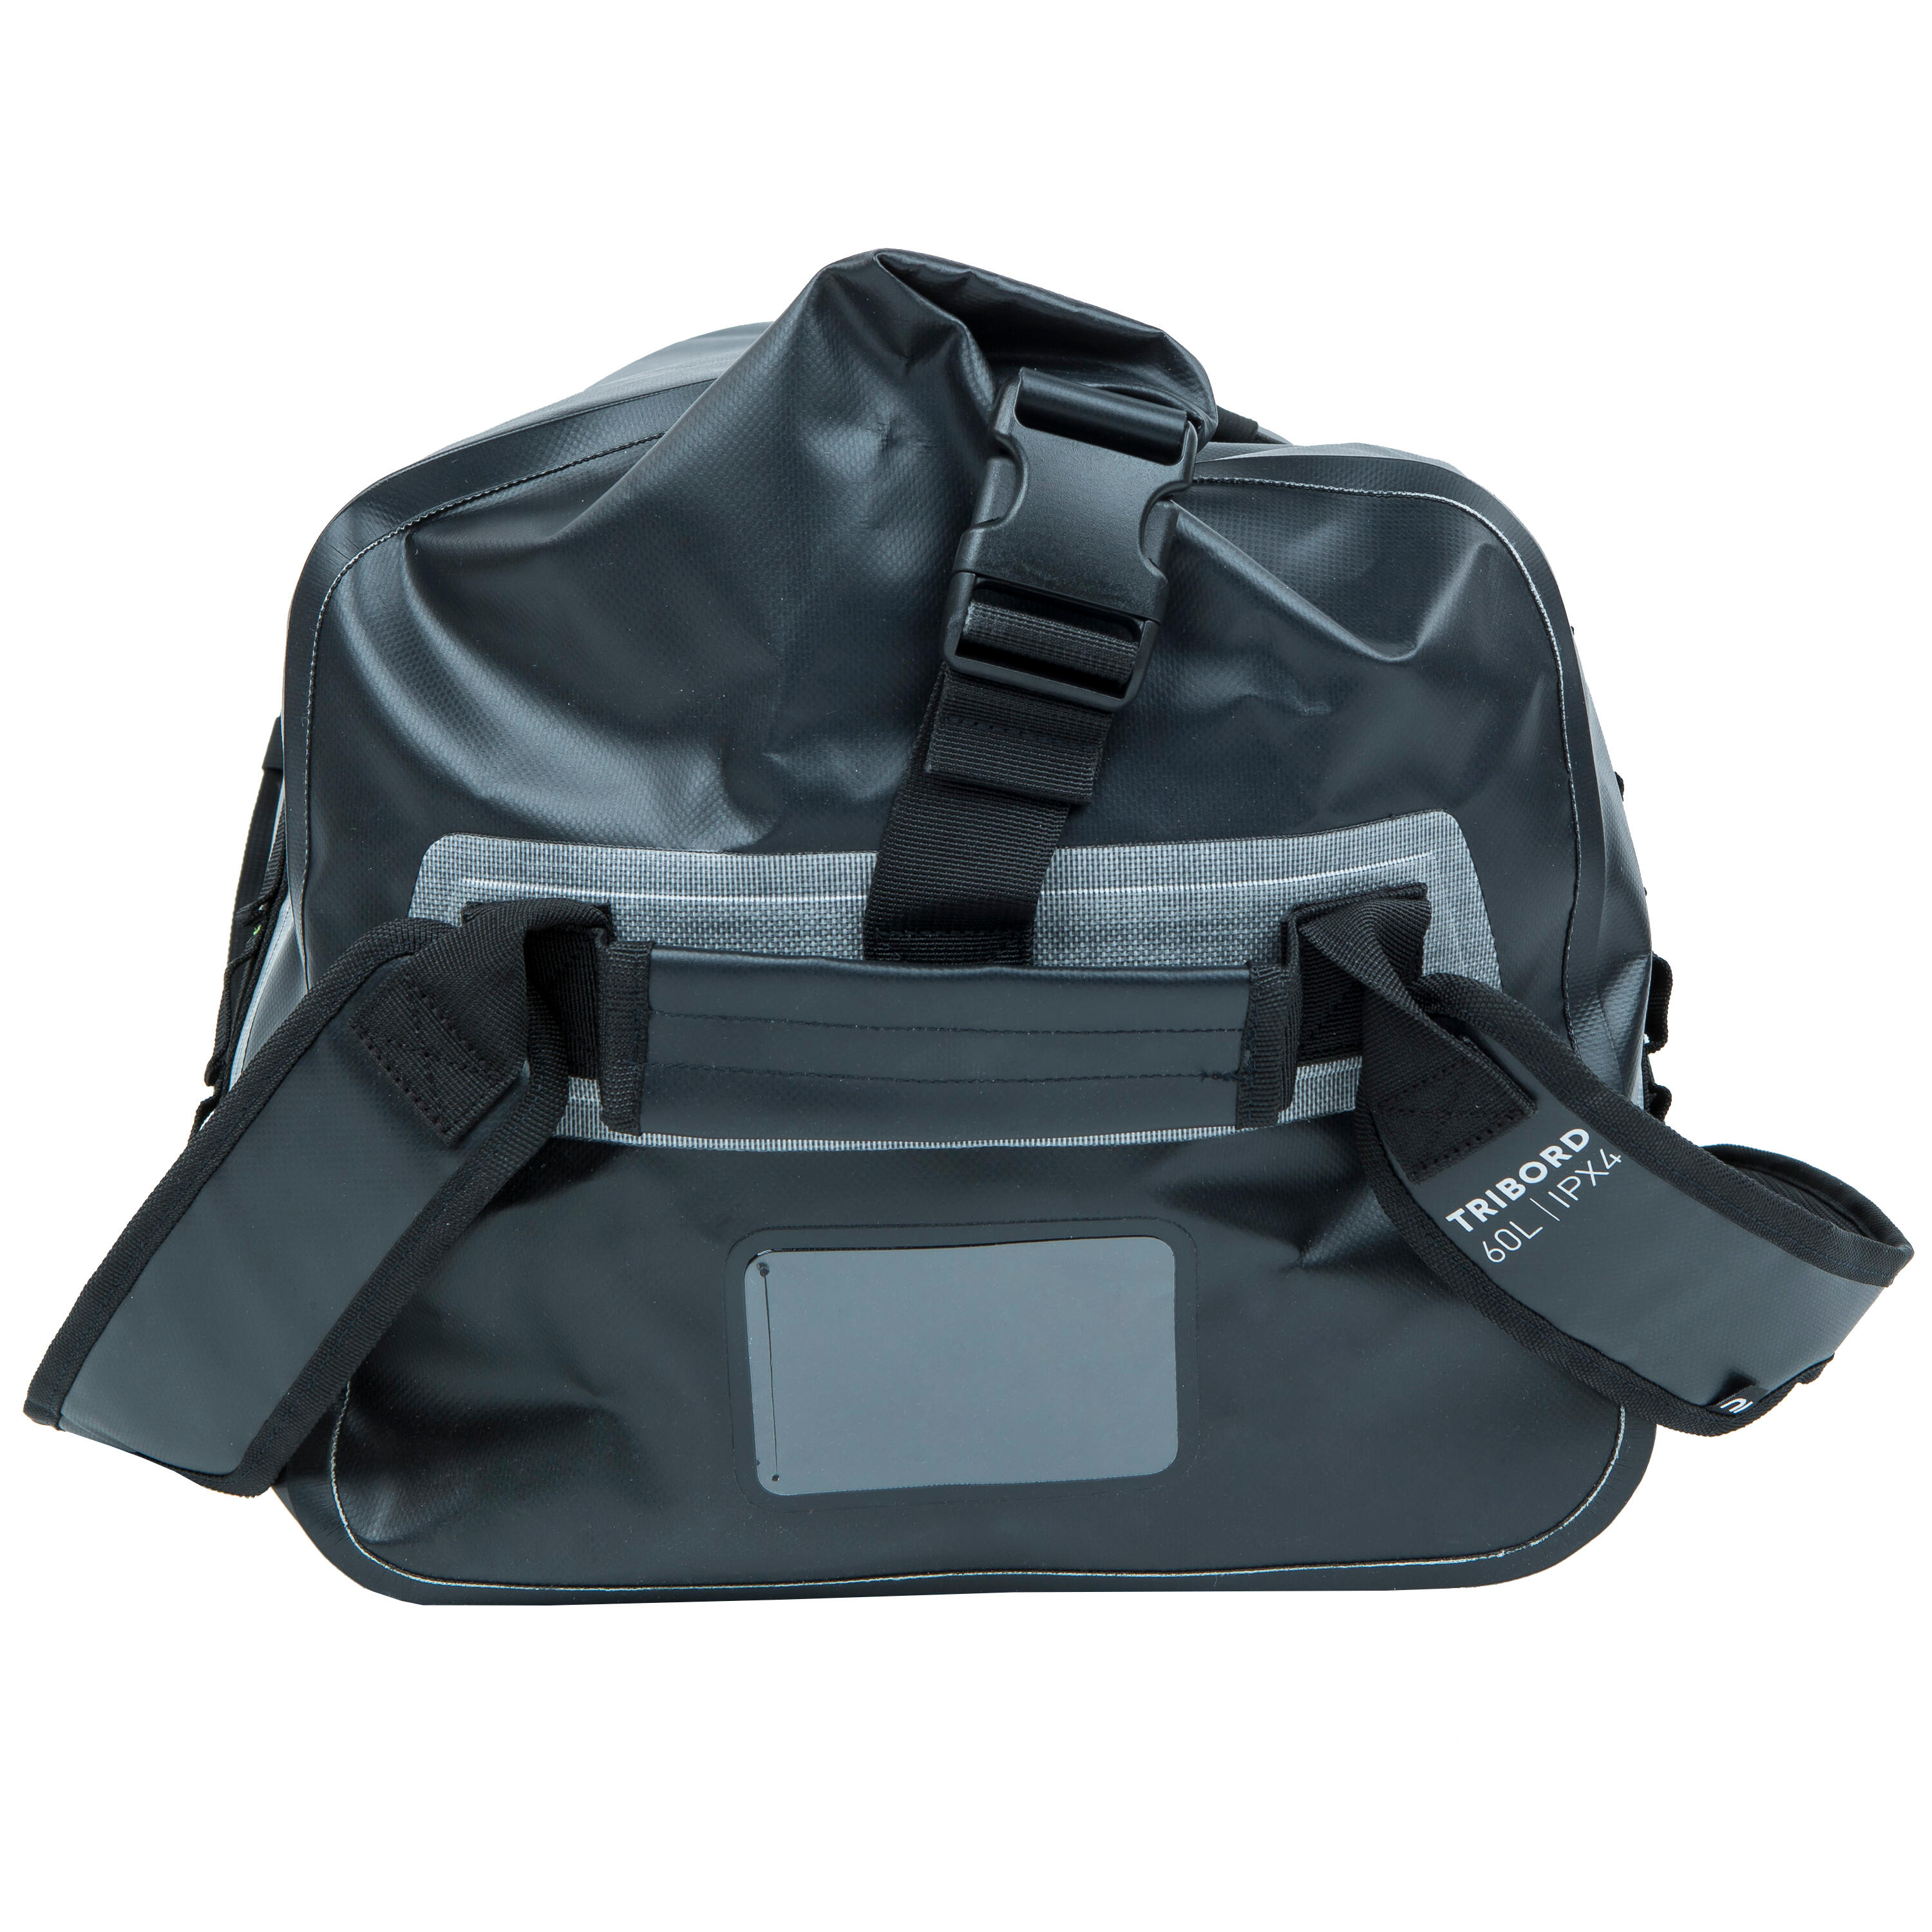 Waterproof duffle bag - travel bag 60 L black 2/8